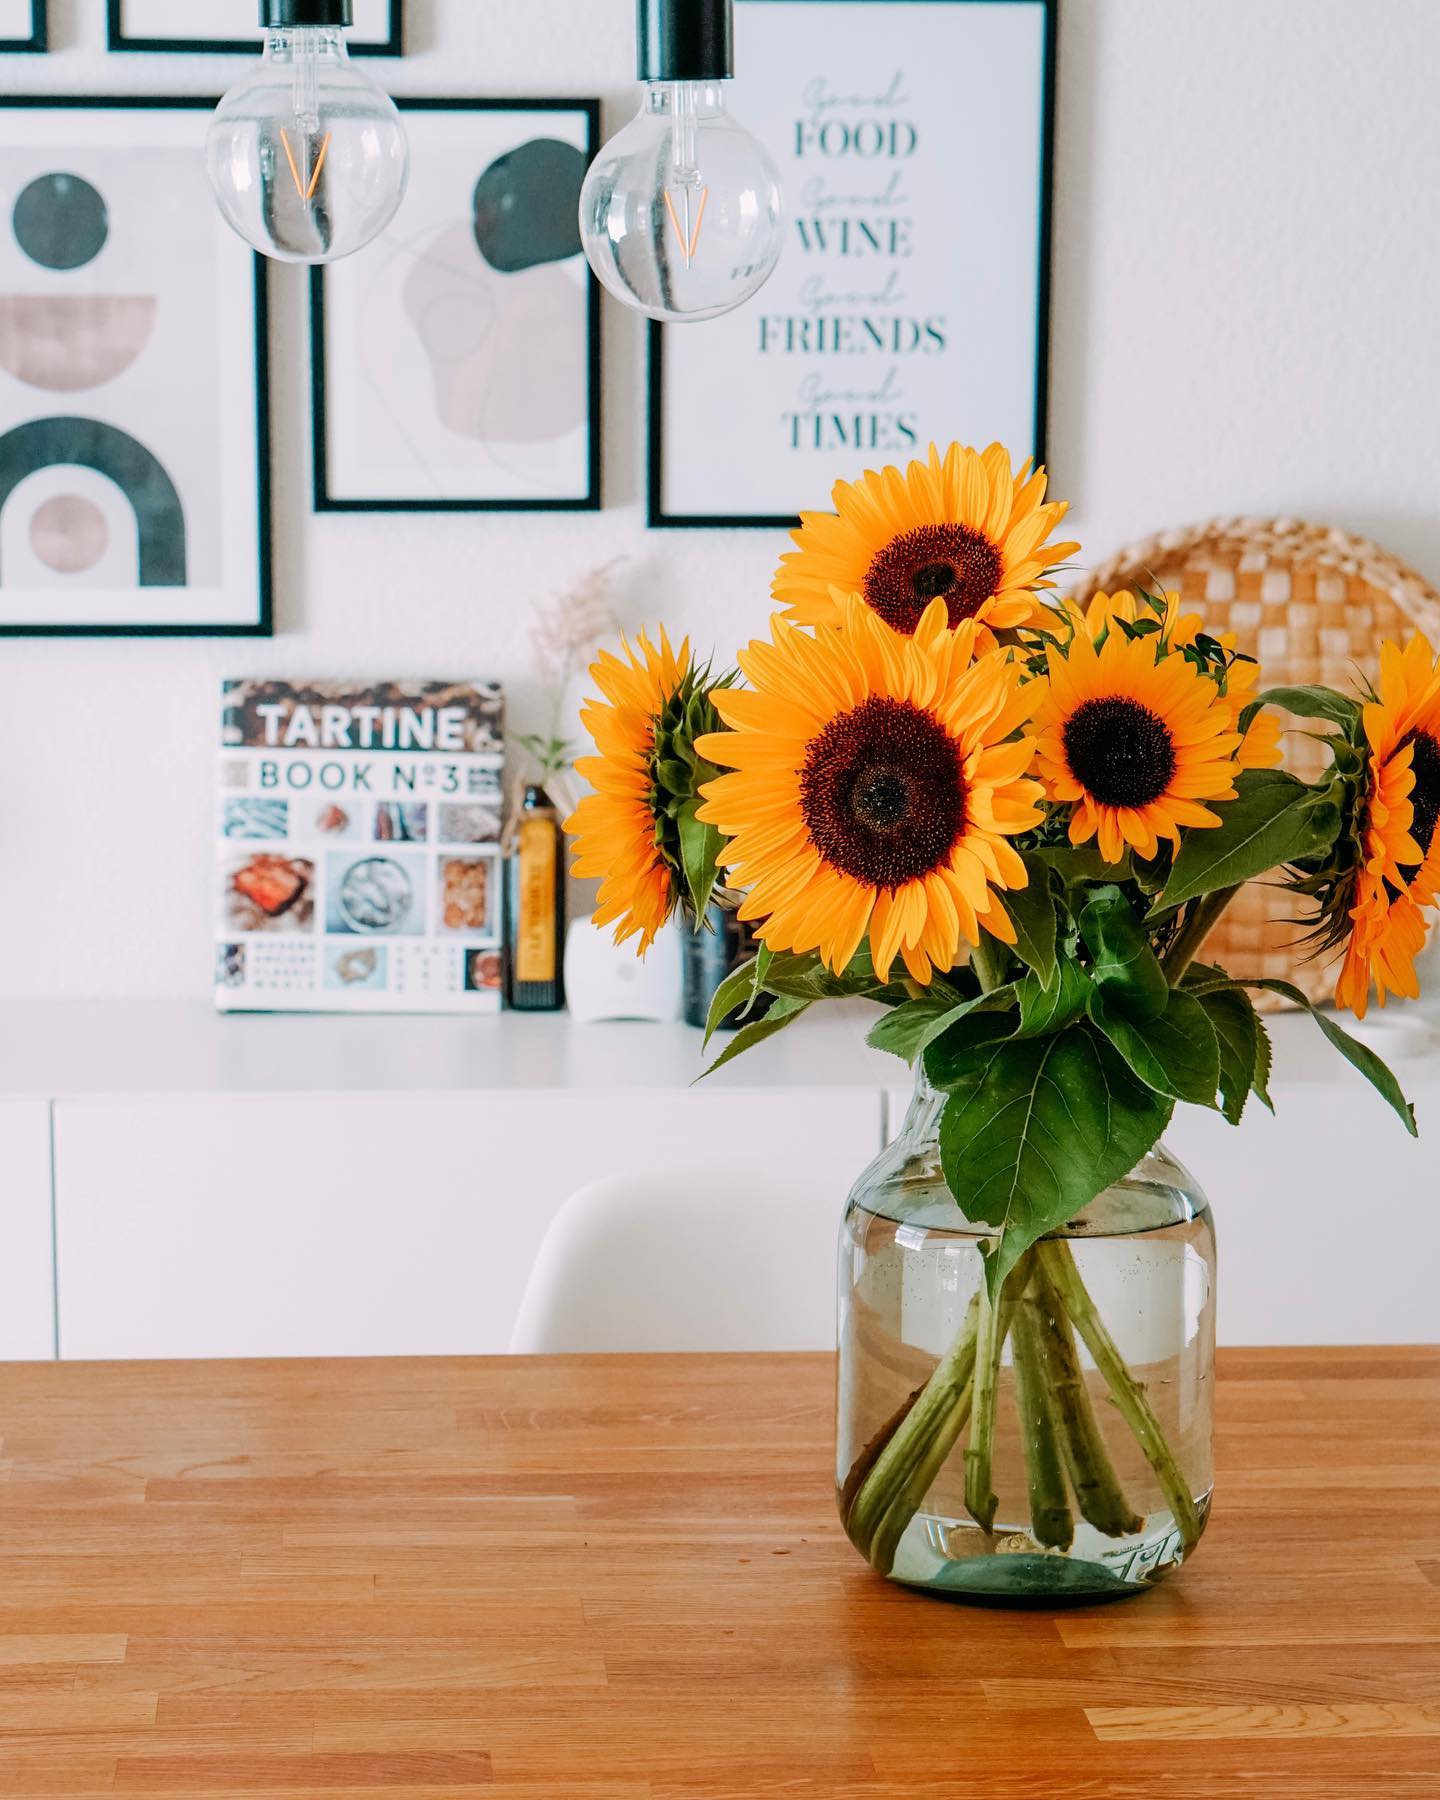 Sonnenblumen 🌻 Eine Sonnenblume als Geschenk ist perfekt, um jemanden zu sagen: “Ich mag dich und wenn ich dich sehe, geht die Sonne auf” ☀️ 

#corazonfood #momlife #homedecor #homesweethome #selfcare #love #happiness #flowers #sonnenblume #sunflower #frischgepflückt #foodblog #swissfoodblogger #switzerland